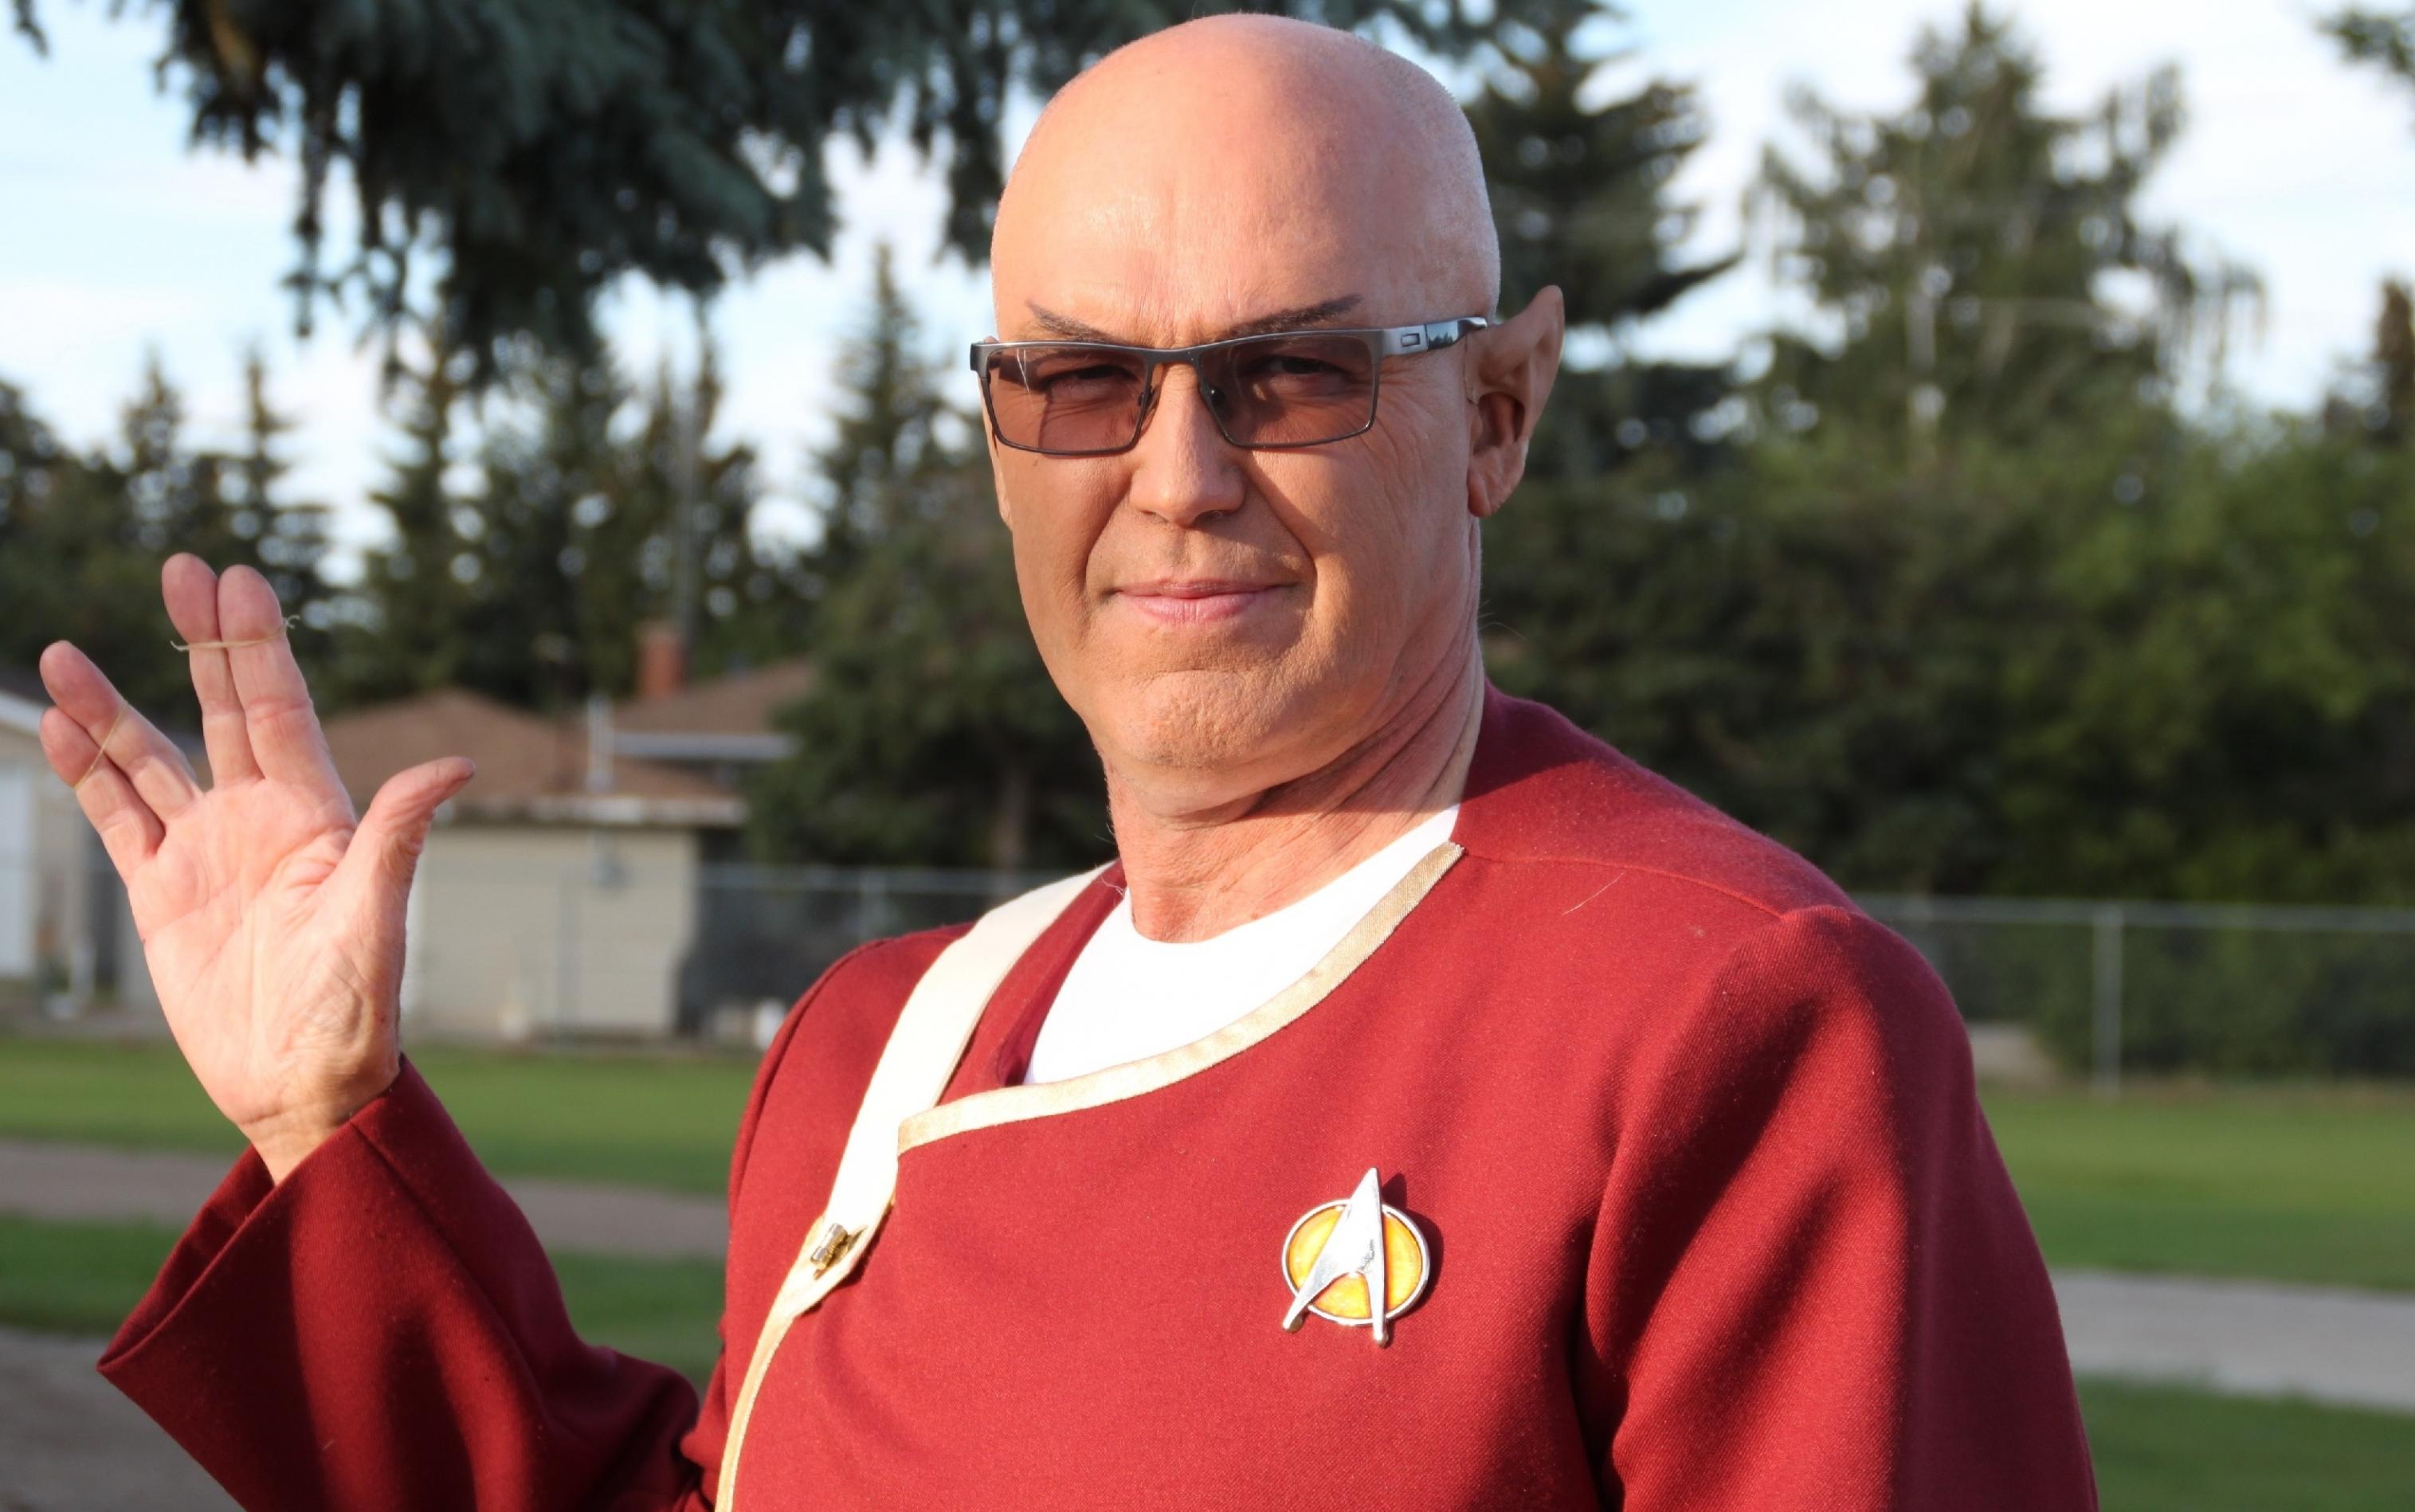 Mann mit Star-Trek-Uniform und spitzen Ohren.